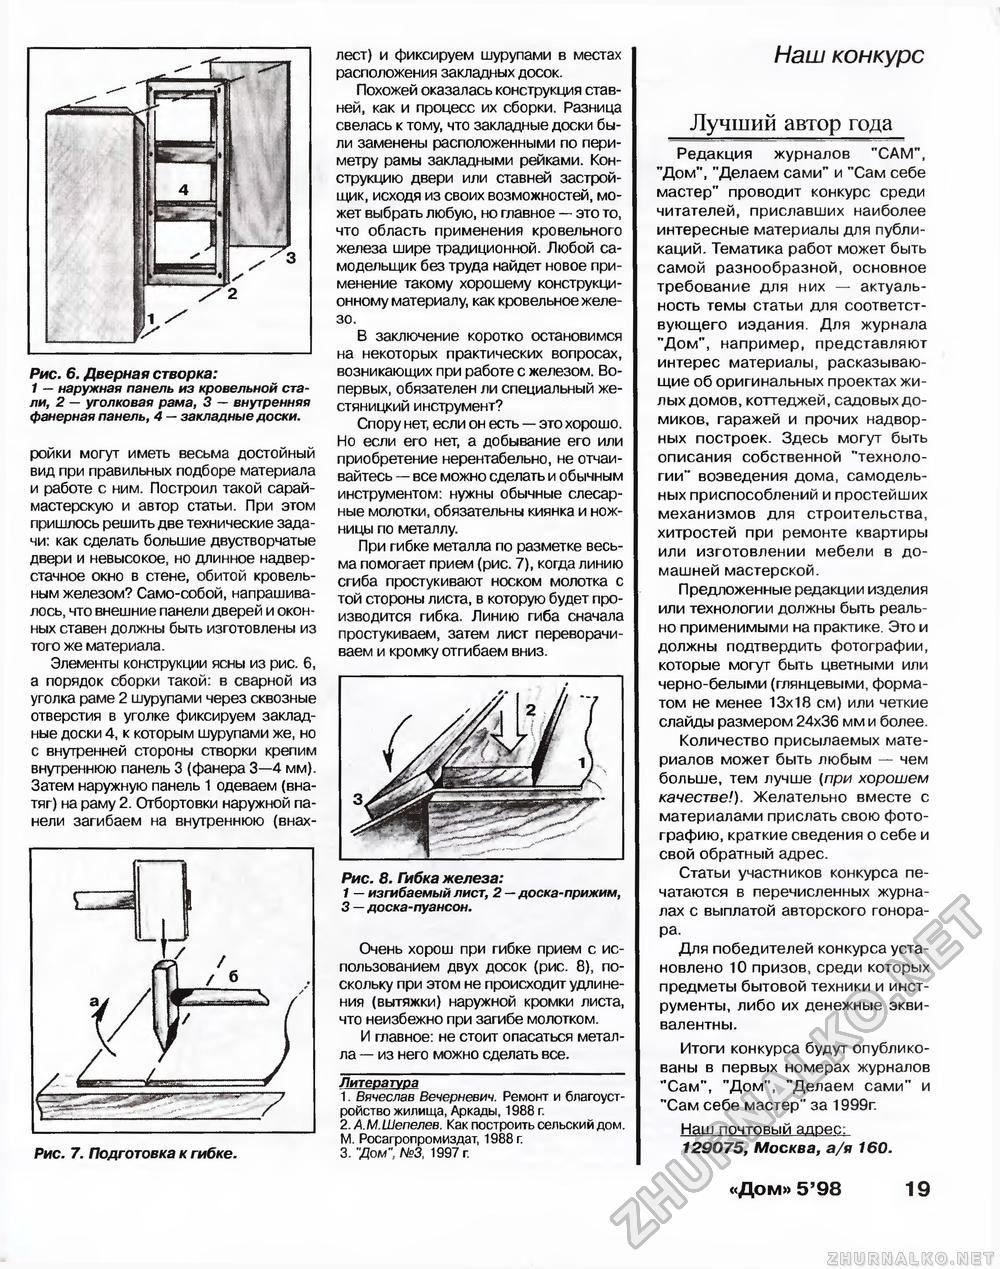 Дом 1998-05, страница 19